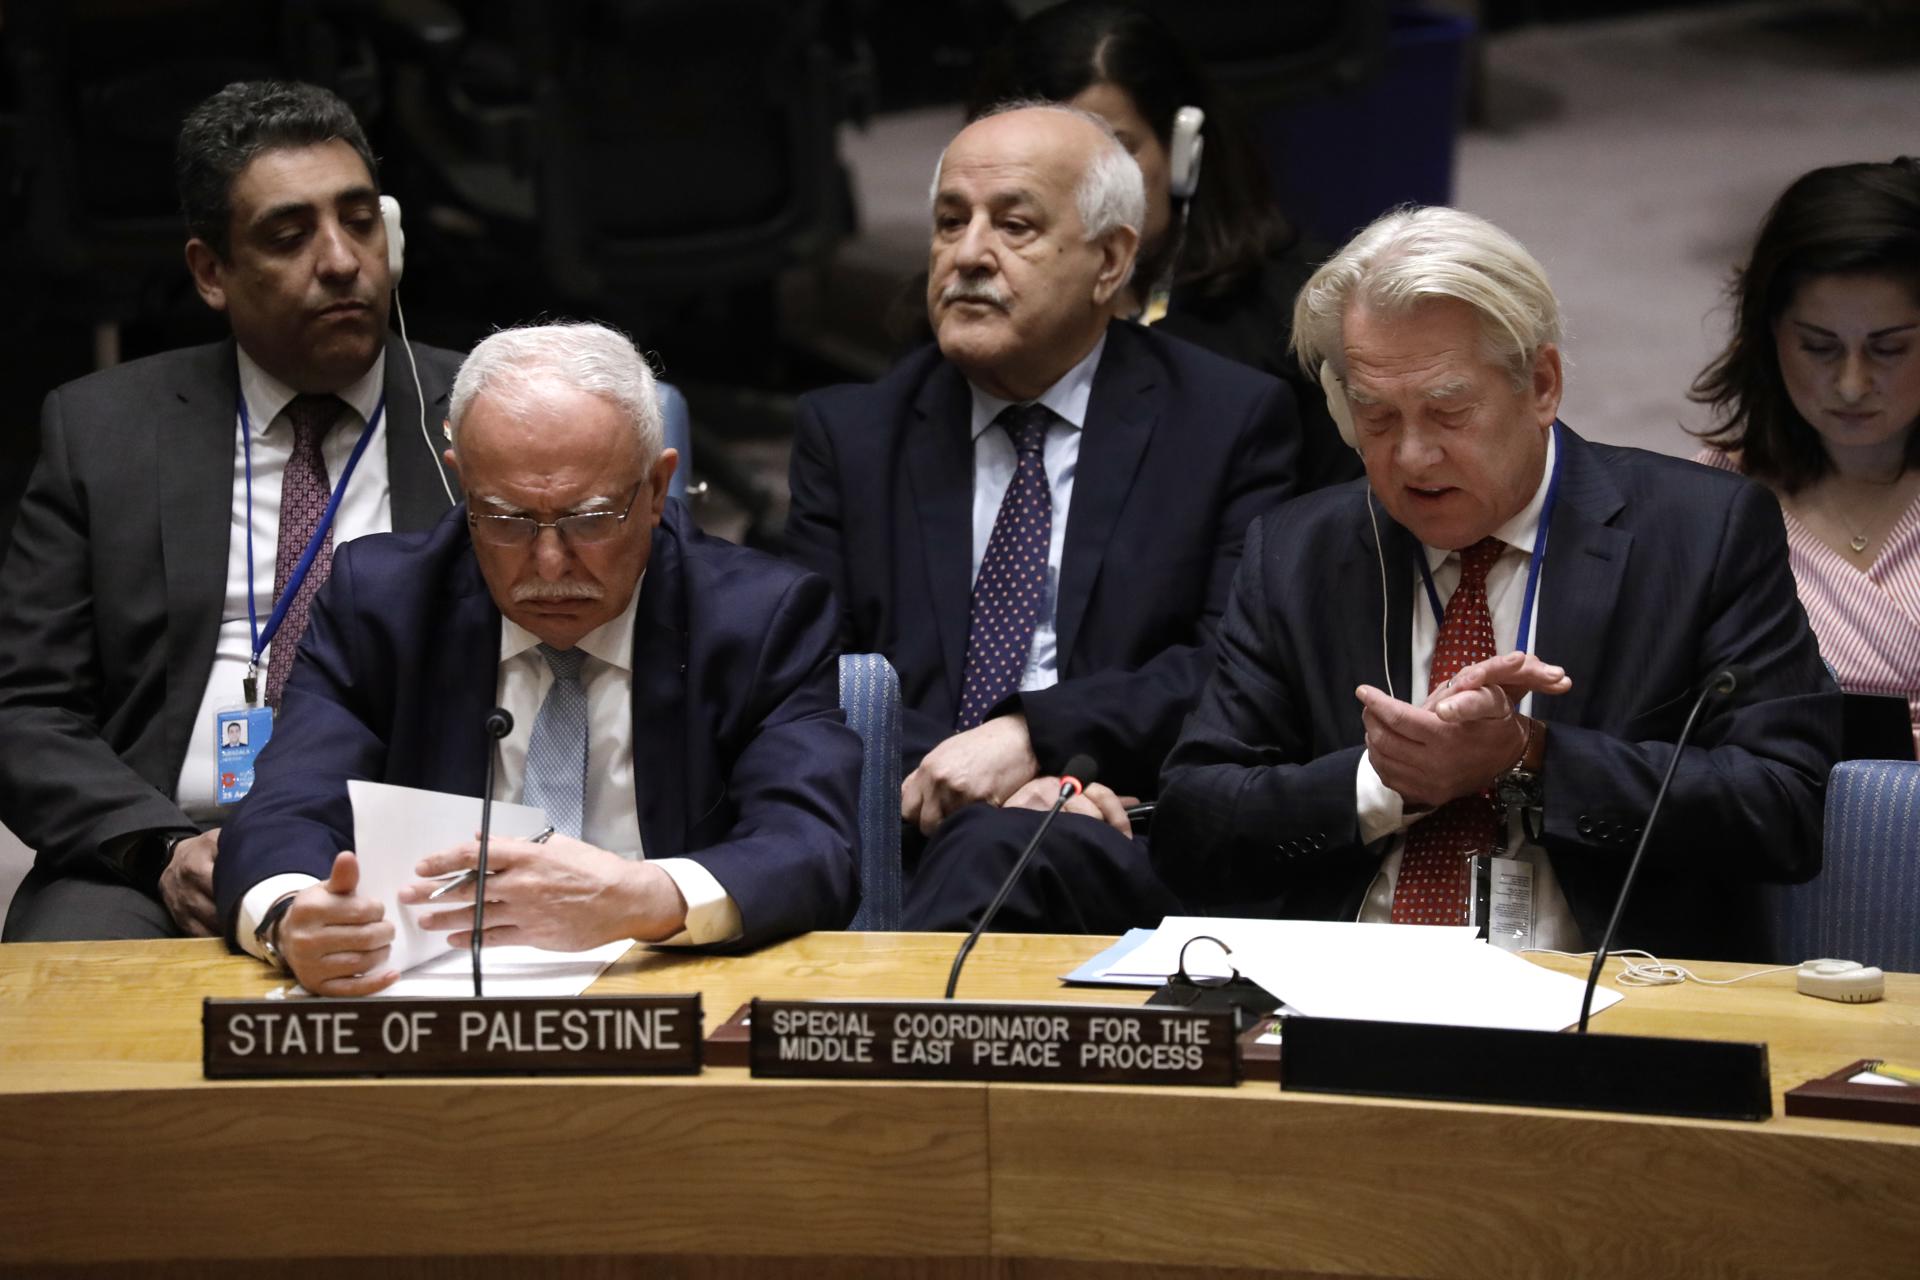 El coordinador especial de la ONU para el proceso de paz en Oriente Medio, encargado de la cuestión palestina, Tor Wennesland (d), habla durante una reunión del consejo de seguridad de las Naciones Unidas en una fotografía de archivo. EFE/Peter Foley